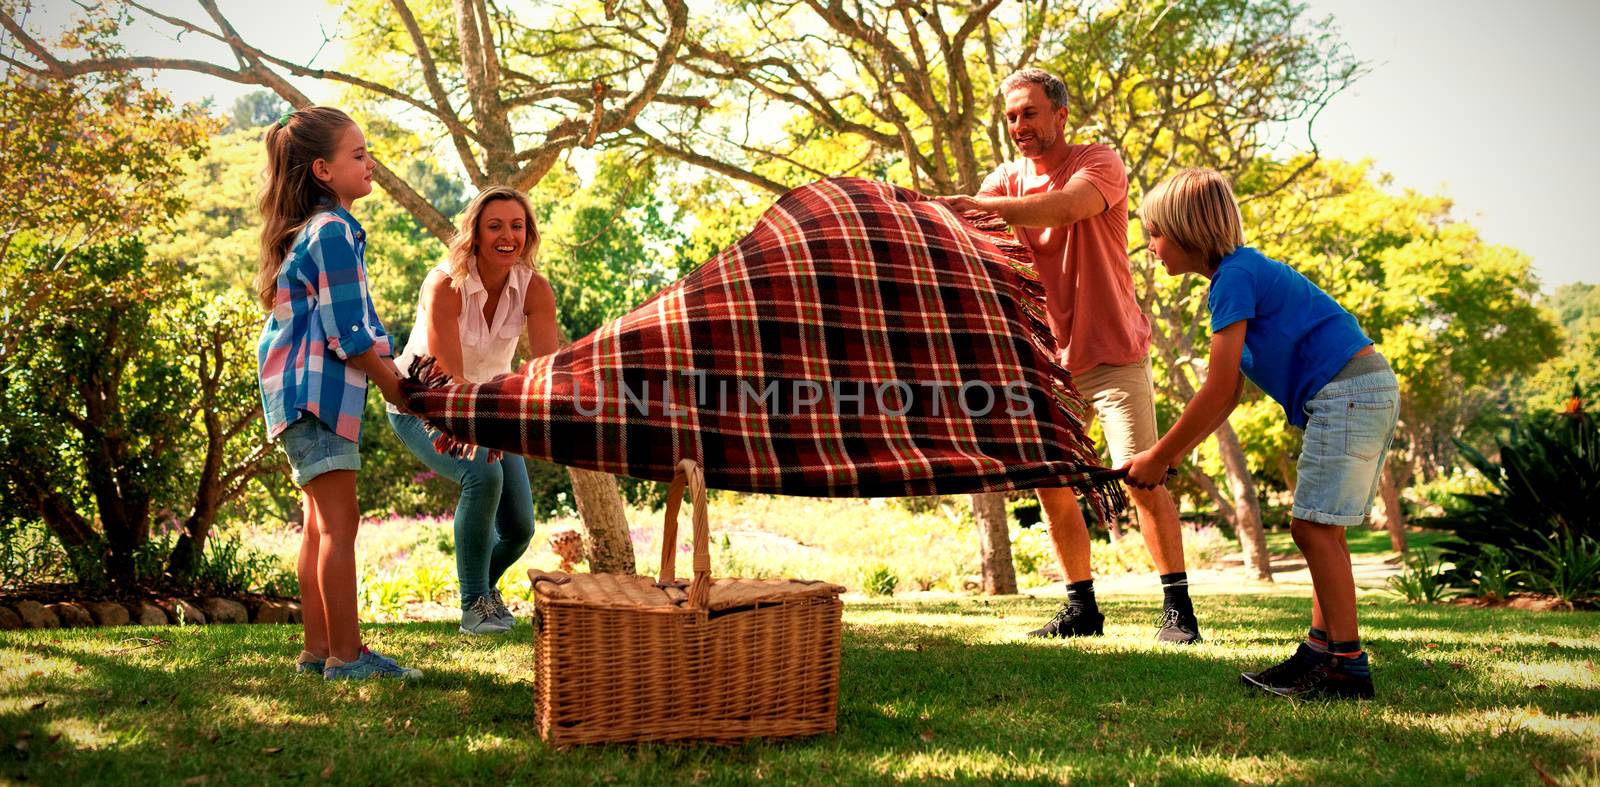 Family spreading the picnic blanket by Wavebreakmedia